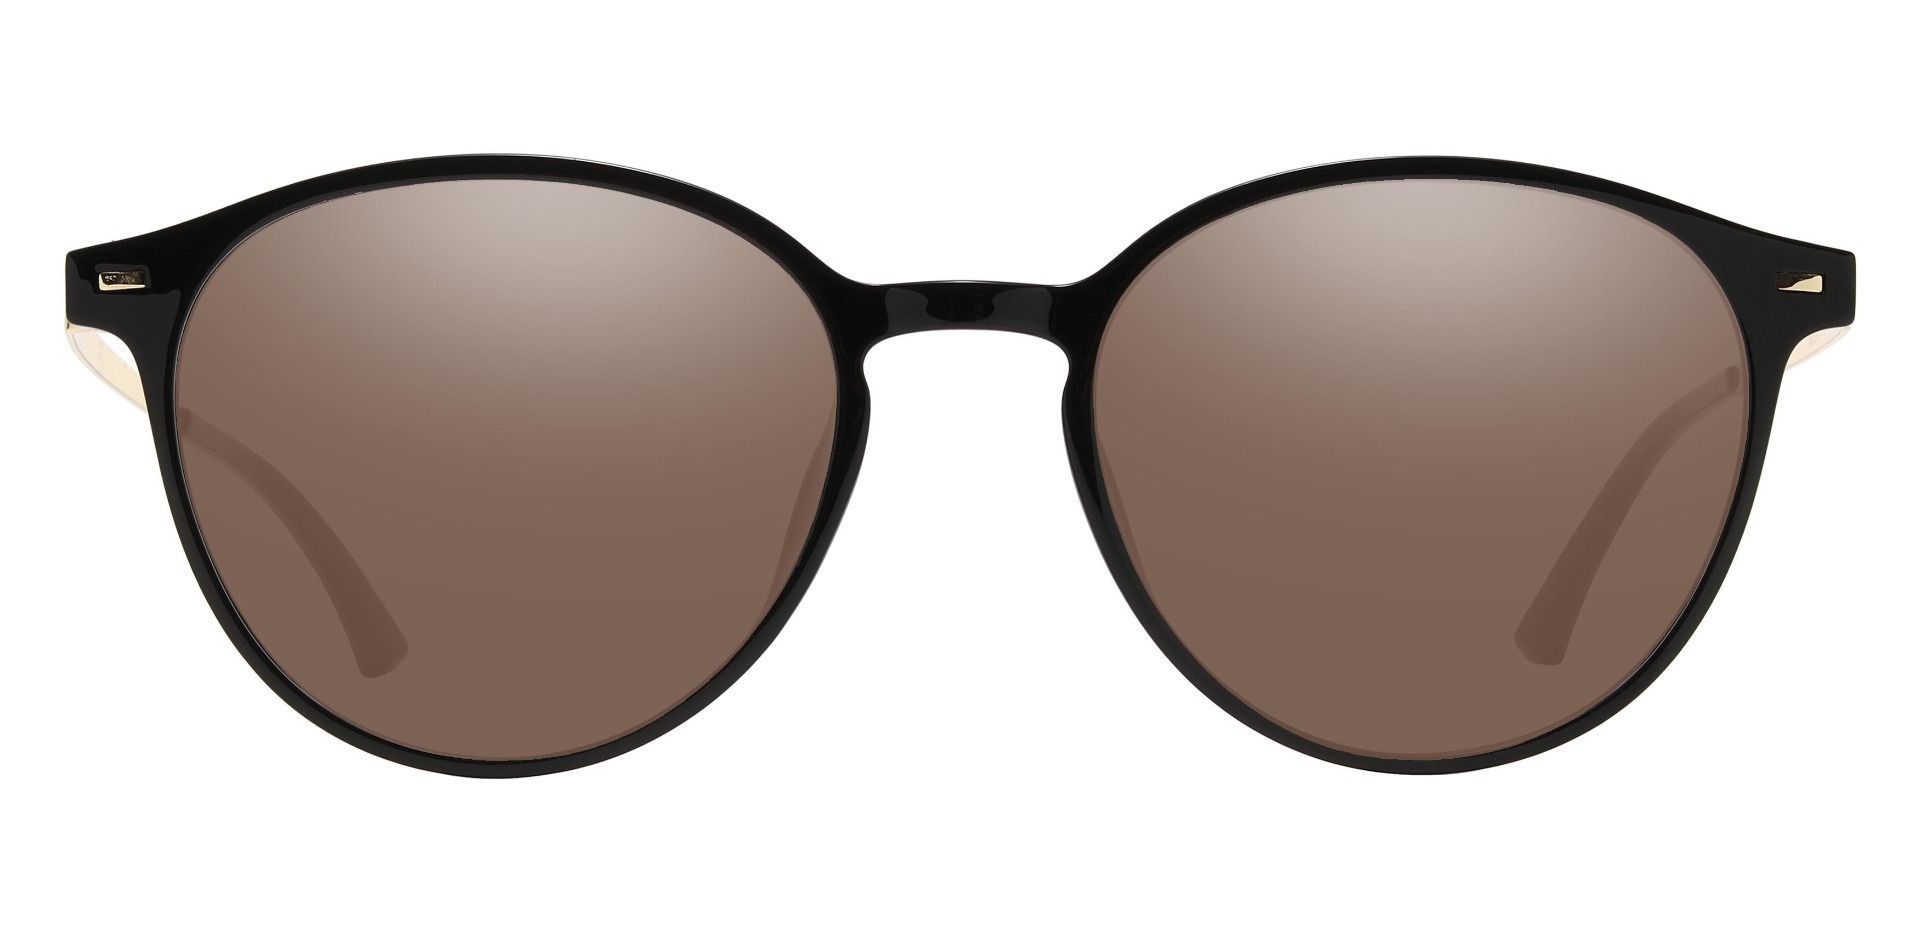 Springer Round Reading Sunglasses - Black Frame With Brown Lenses